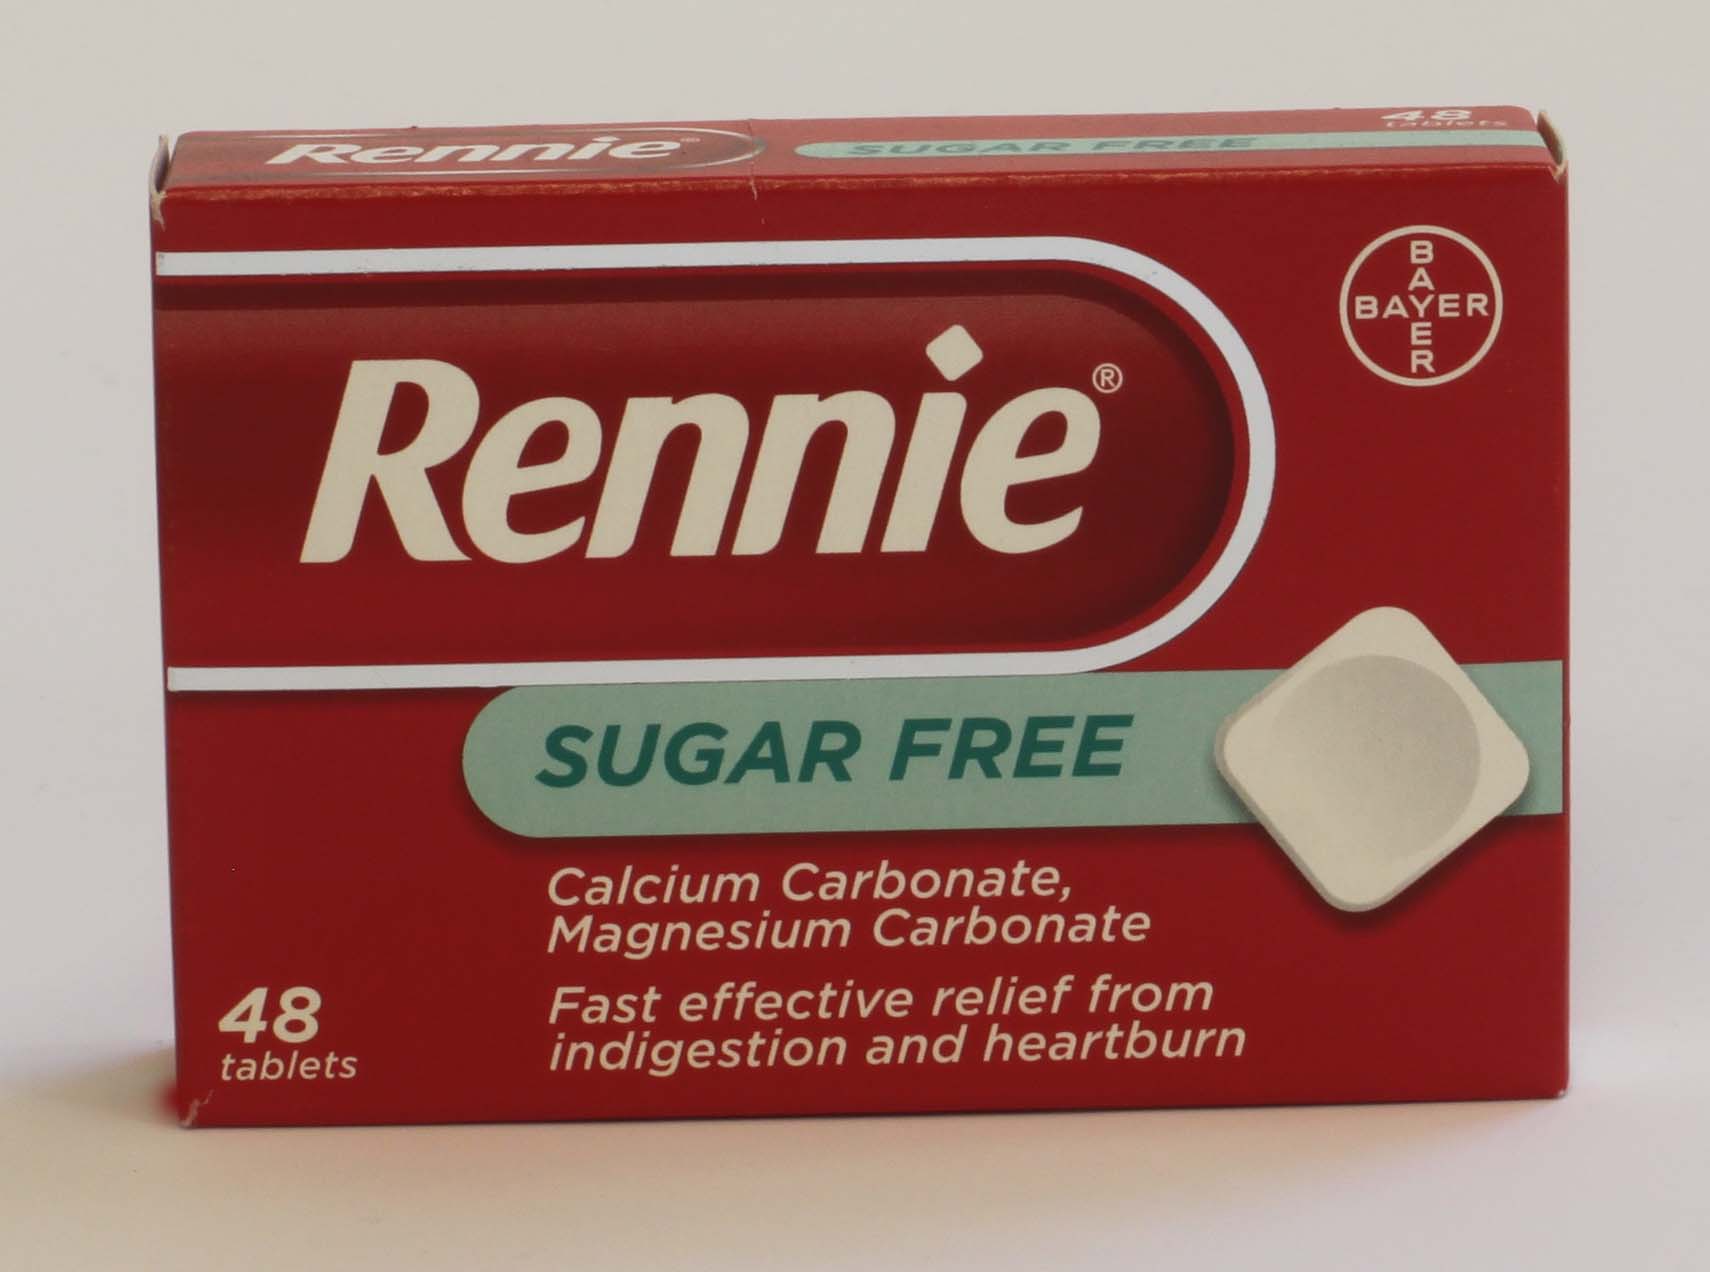 Rennie Sugar Free - 48 tablets